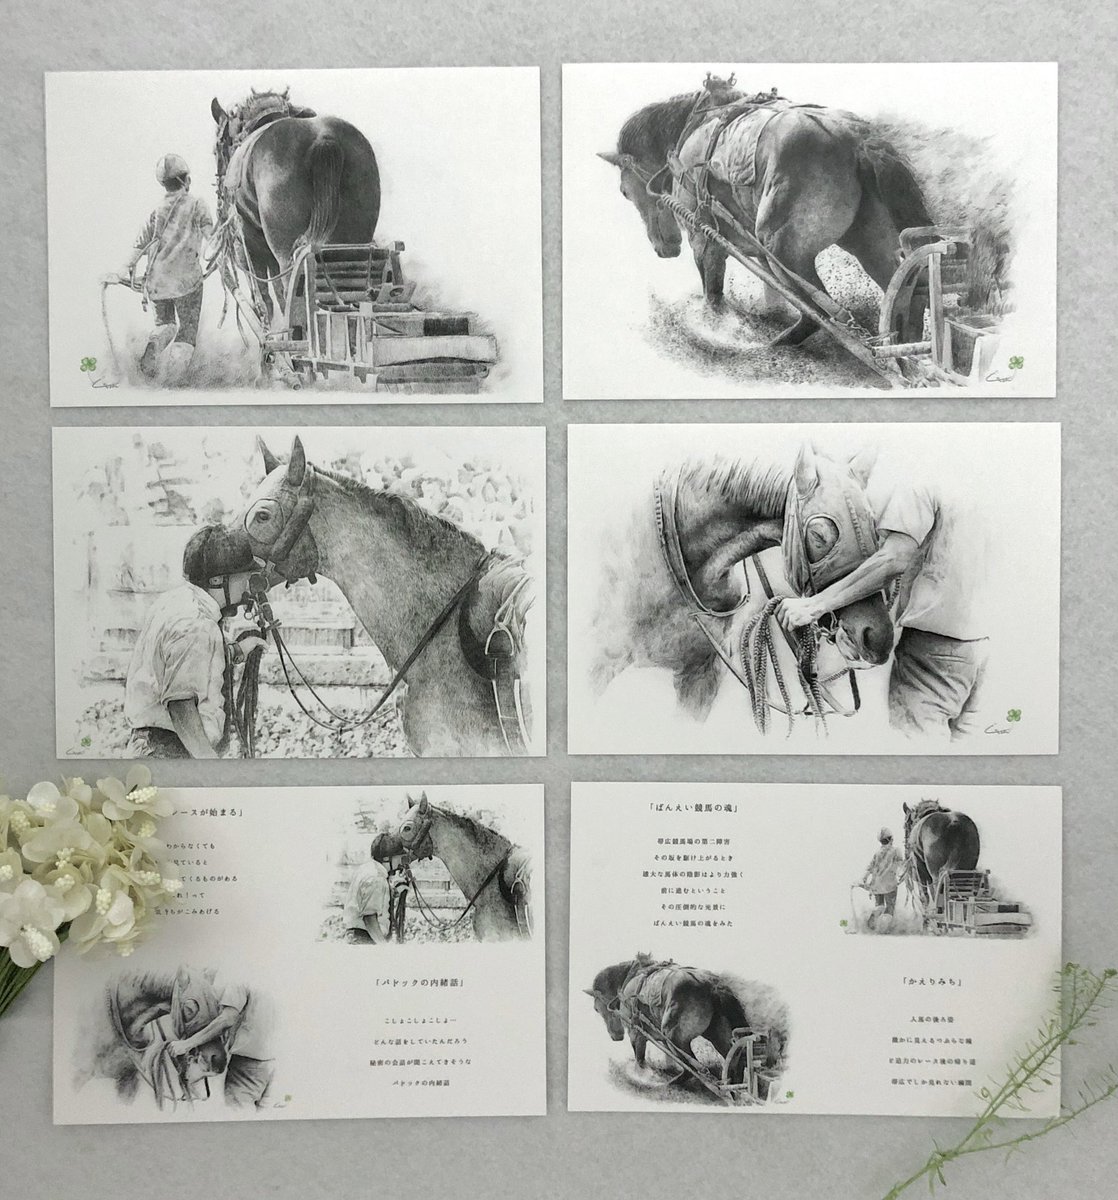 馬の絵ポストカードが完成しました。

数も種類もまだまだ少ないですが、
大切な人へのプレゼントに
自分への贈り物に
部屋を彩るインテリアなどに
いかがでしょうか

minneにて販売します。
オリジナル馬切手を貼って郵送させていただきます♪ #馬の絵 